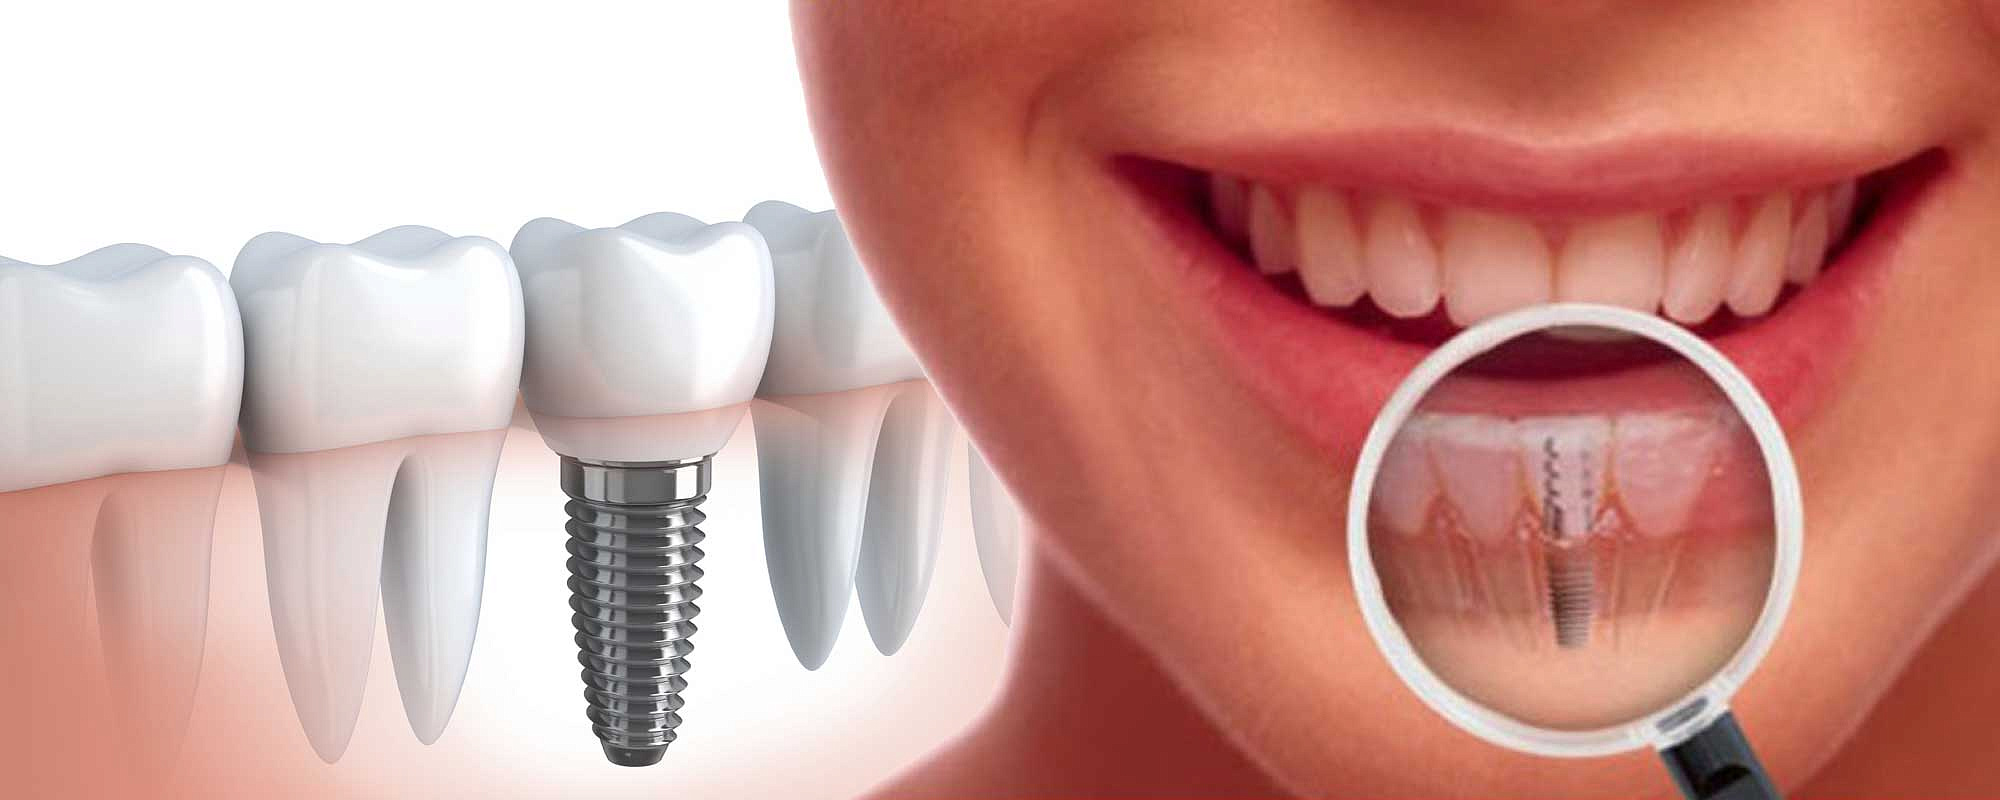 Имплантация зубов в СПб под ключ | Узнать цены на имплантацию зубов